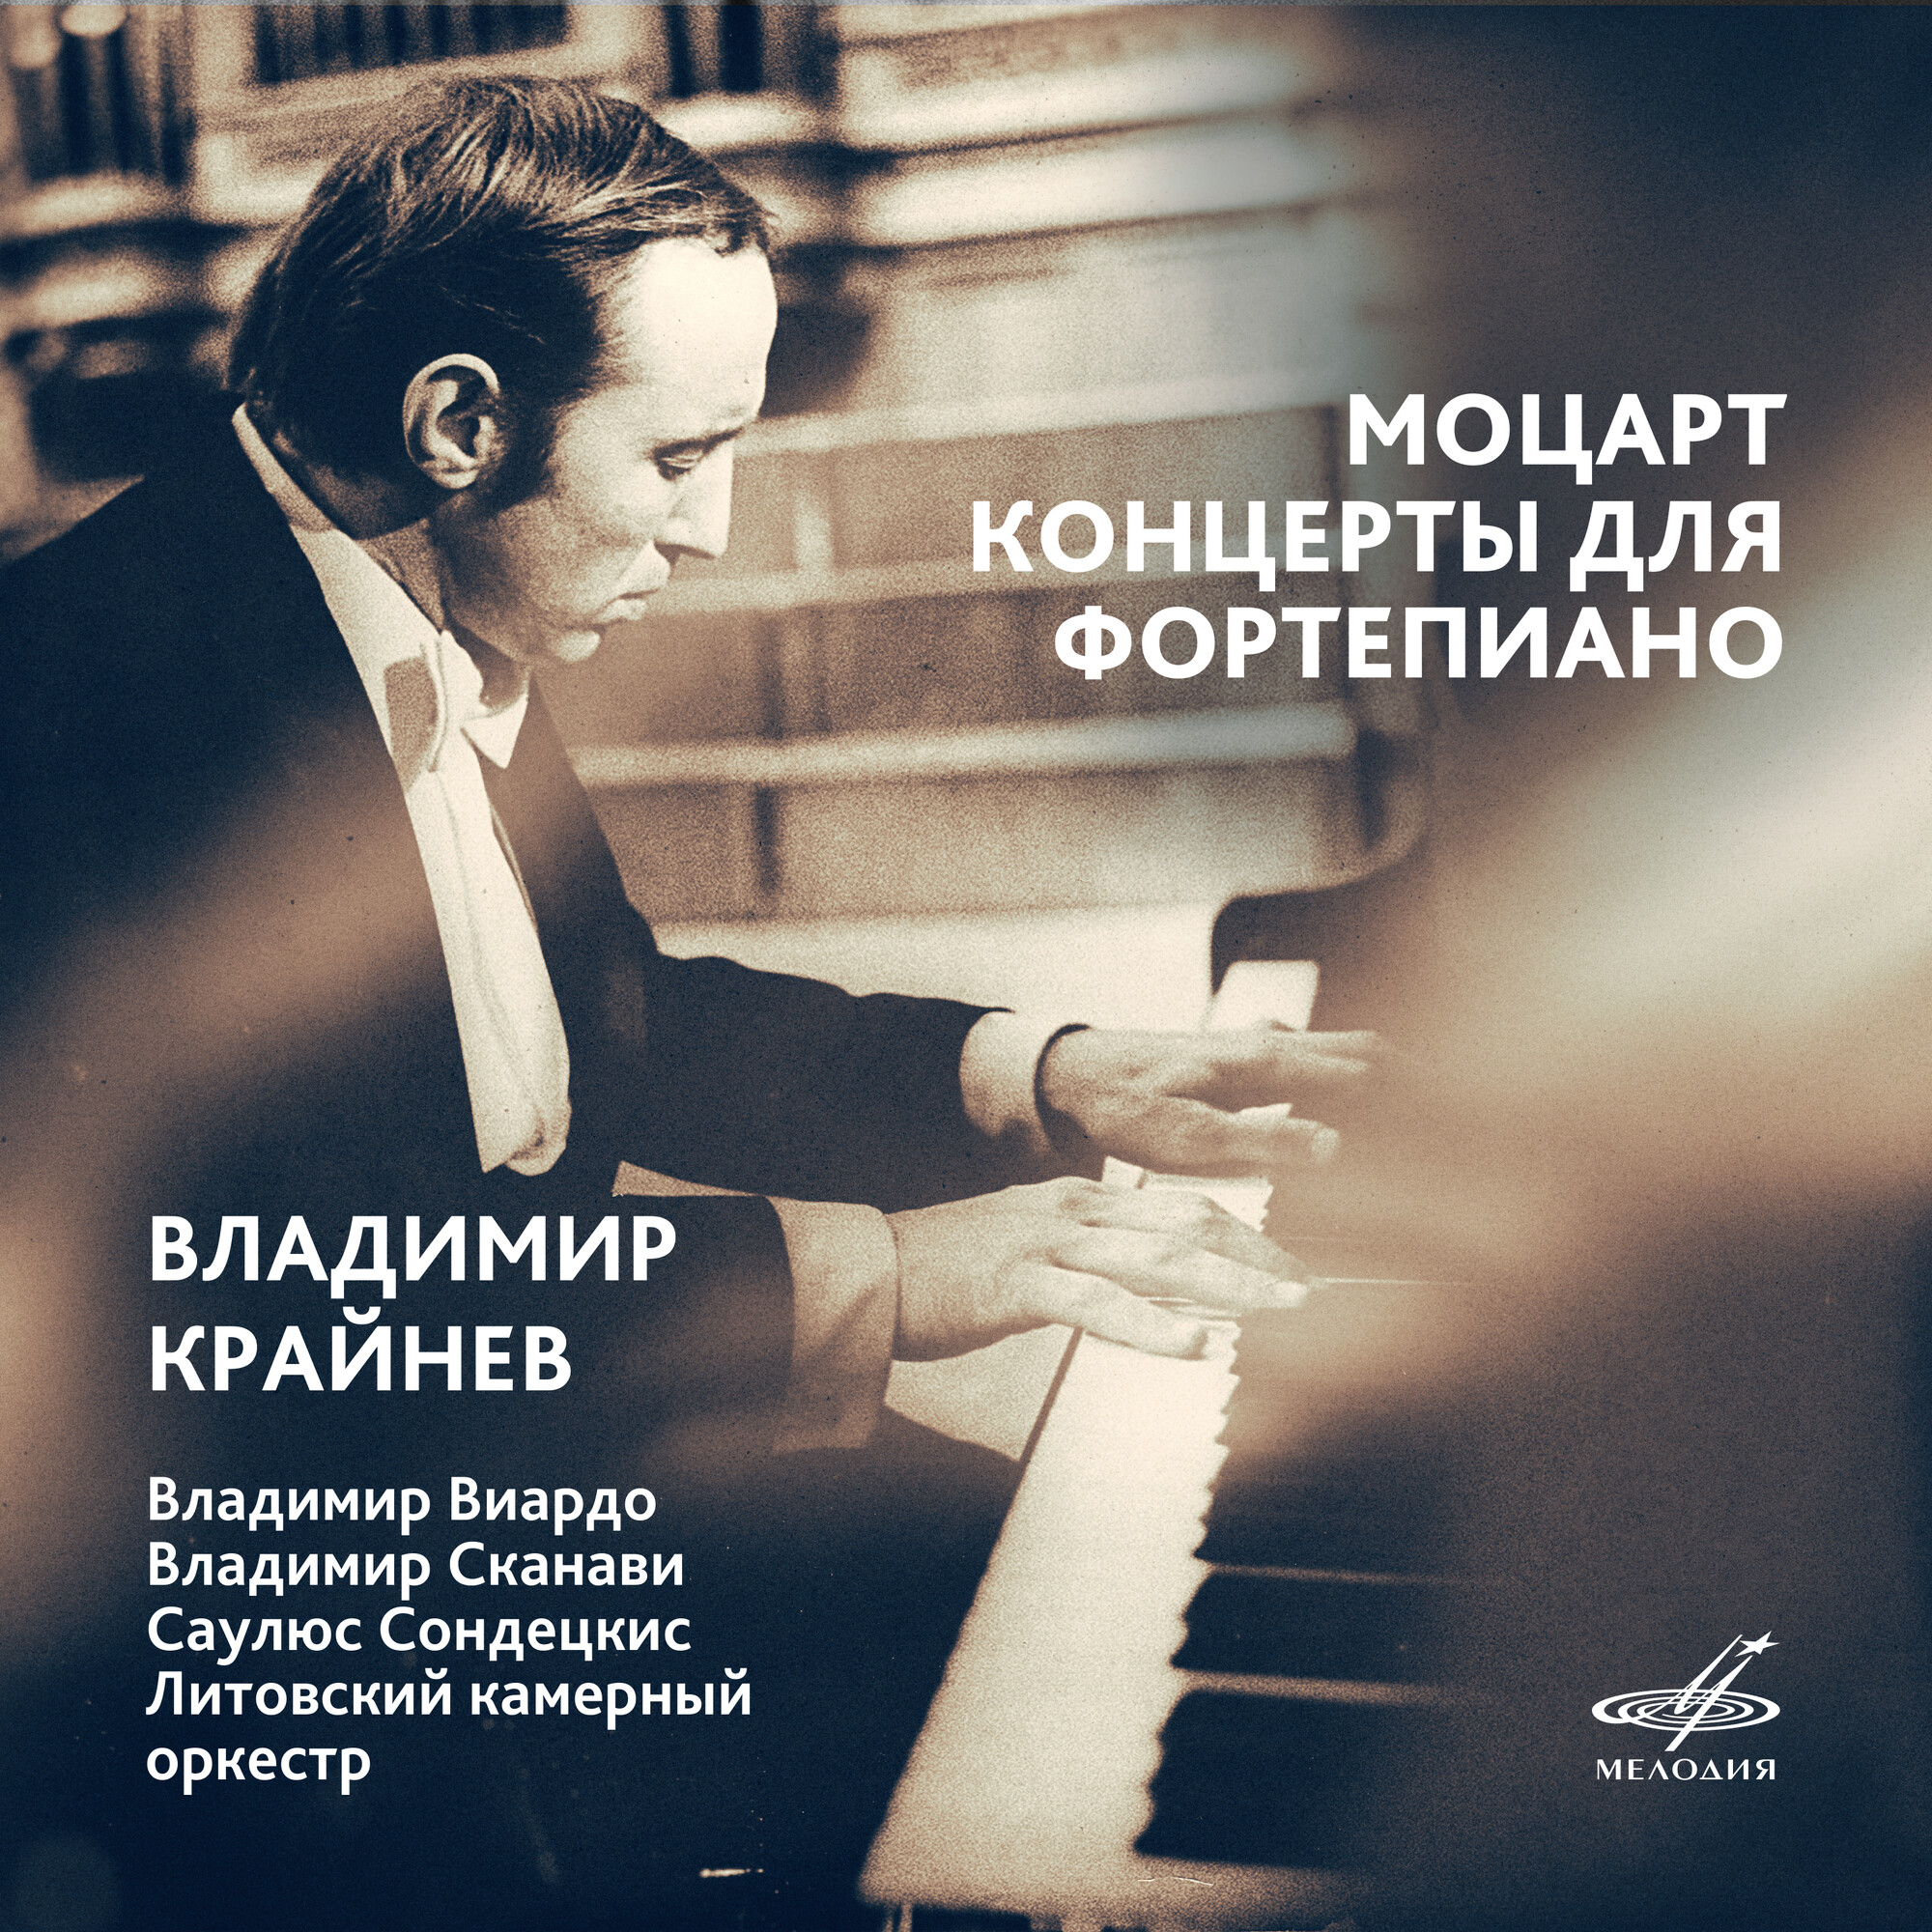 Владимир КРАЙНЕВ. Моцарт: Концерты для фортепиано.